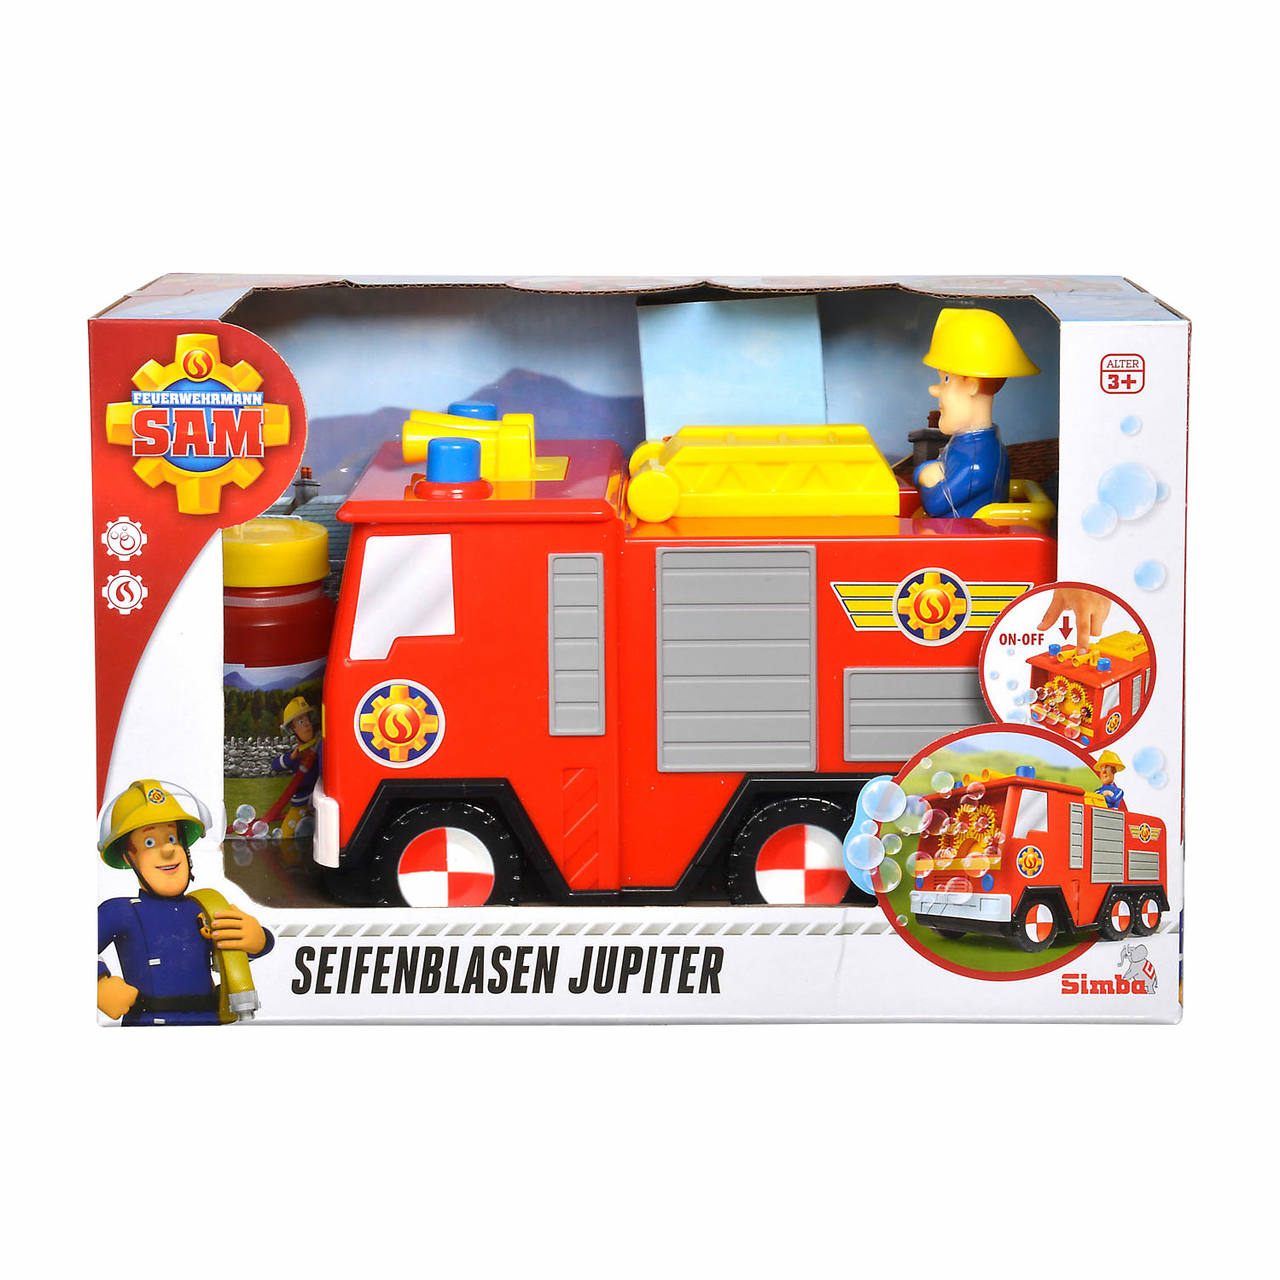 Informeer Schotel Motivatie Brandweerman Sam Bellenblaas Jupiter - Het Speelgoedpaleis